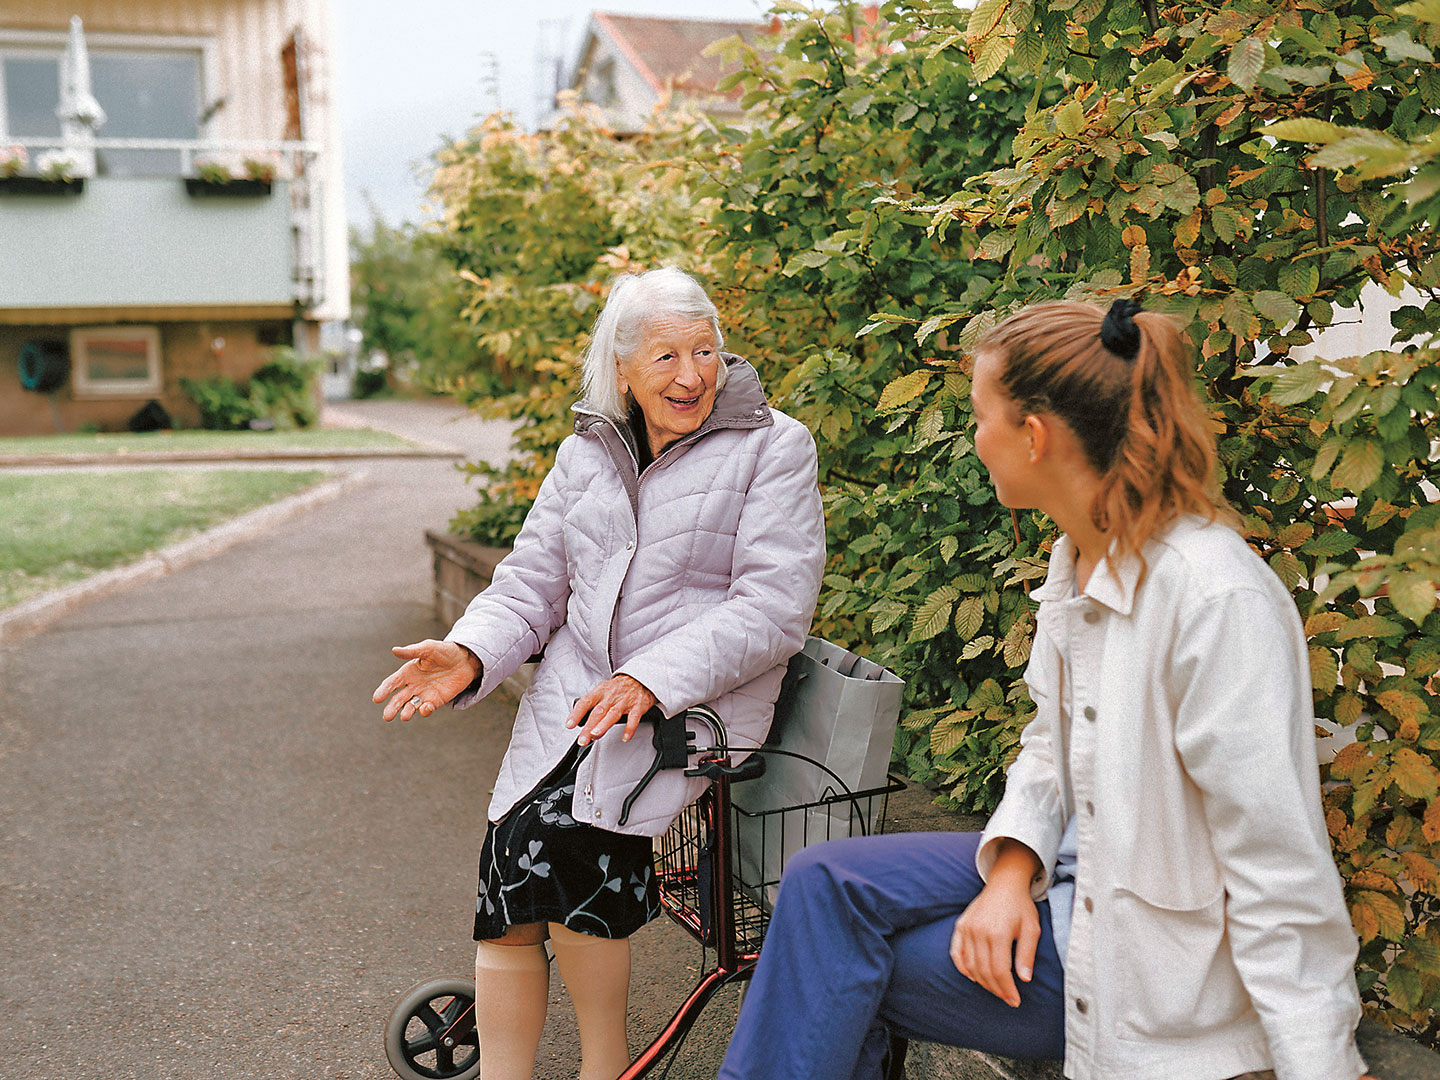 Foto einer alten Dame mit Rollator, die im Freien mit einer jungen Frau spricht